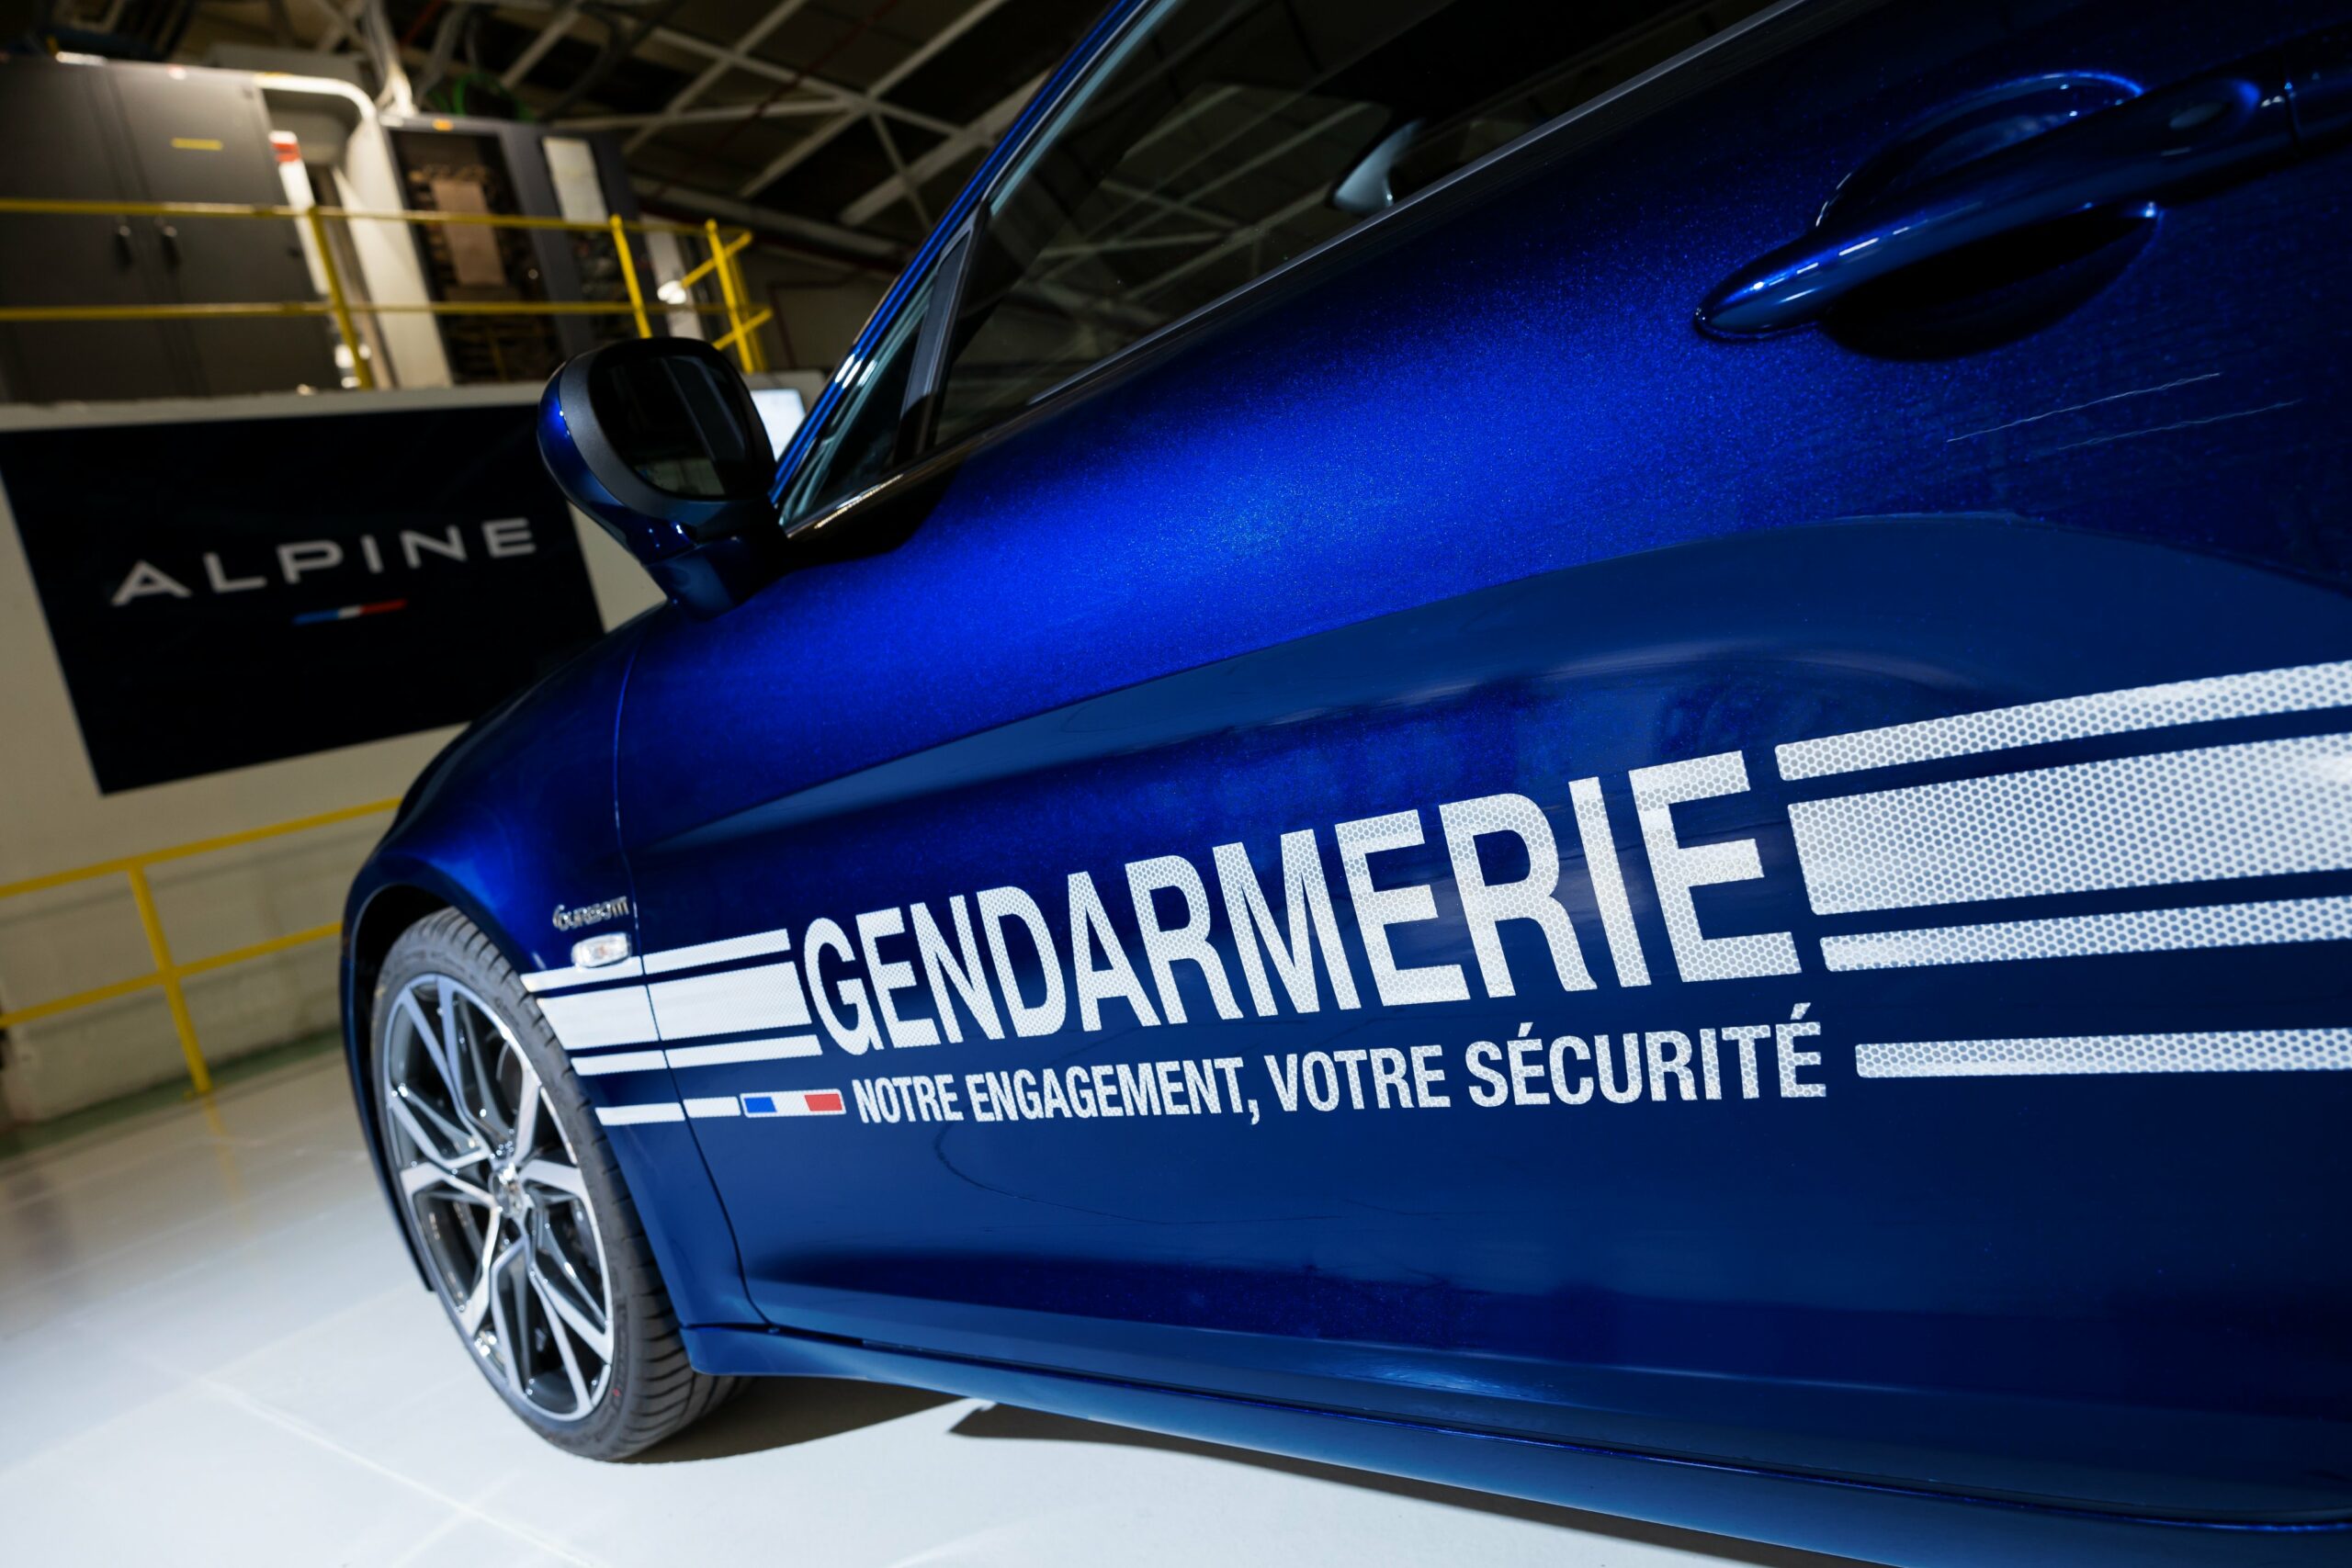 F1 - Ocon obligé de se justifier après sa vidéo à bord de l'Alpine de la Gendarmerie